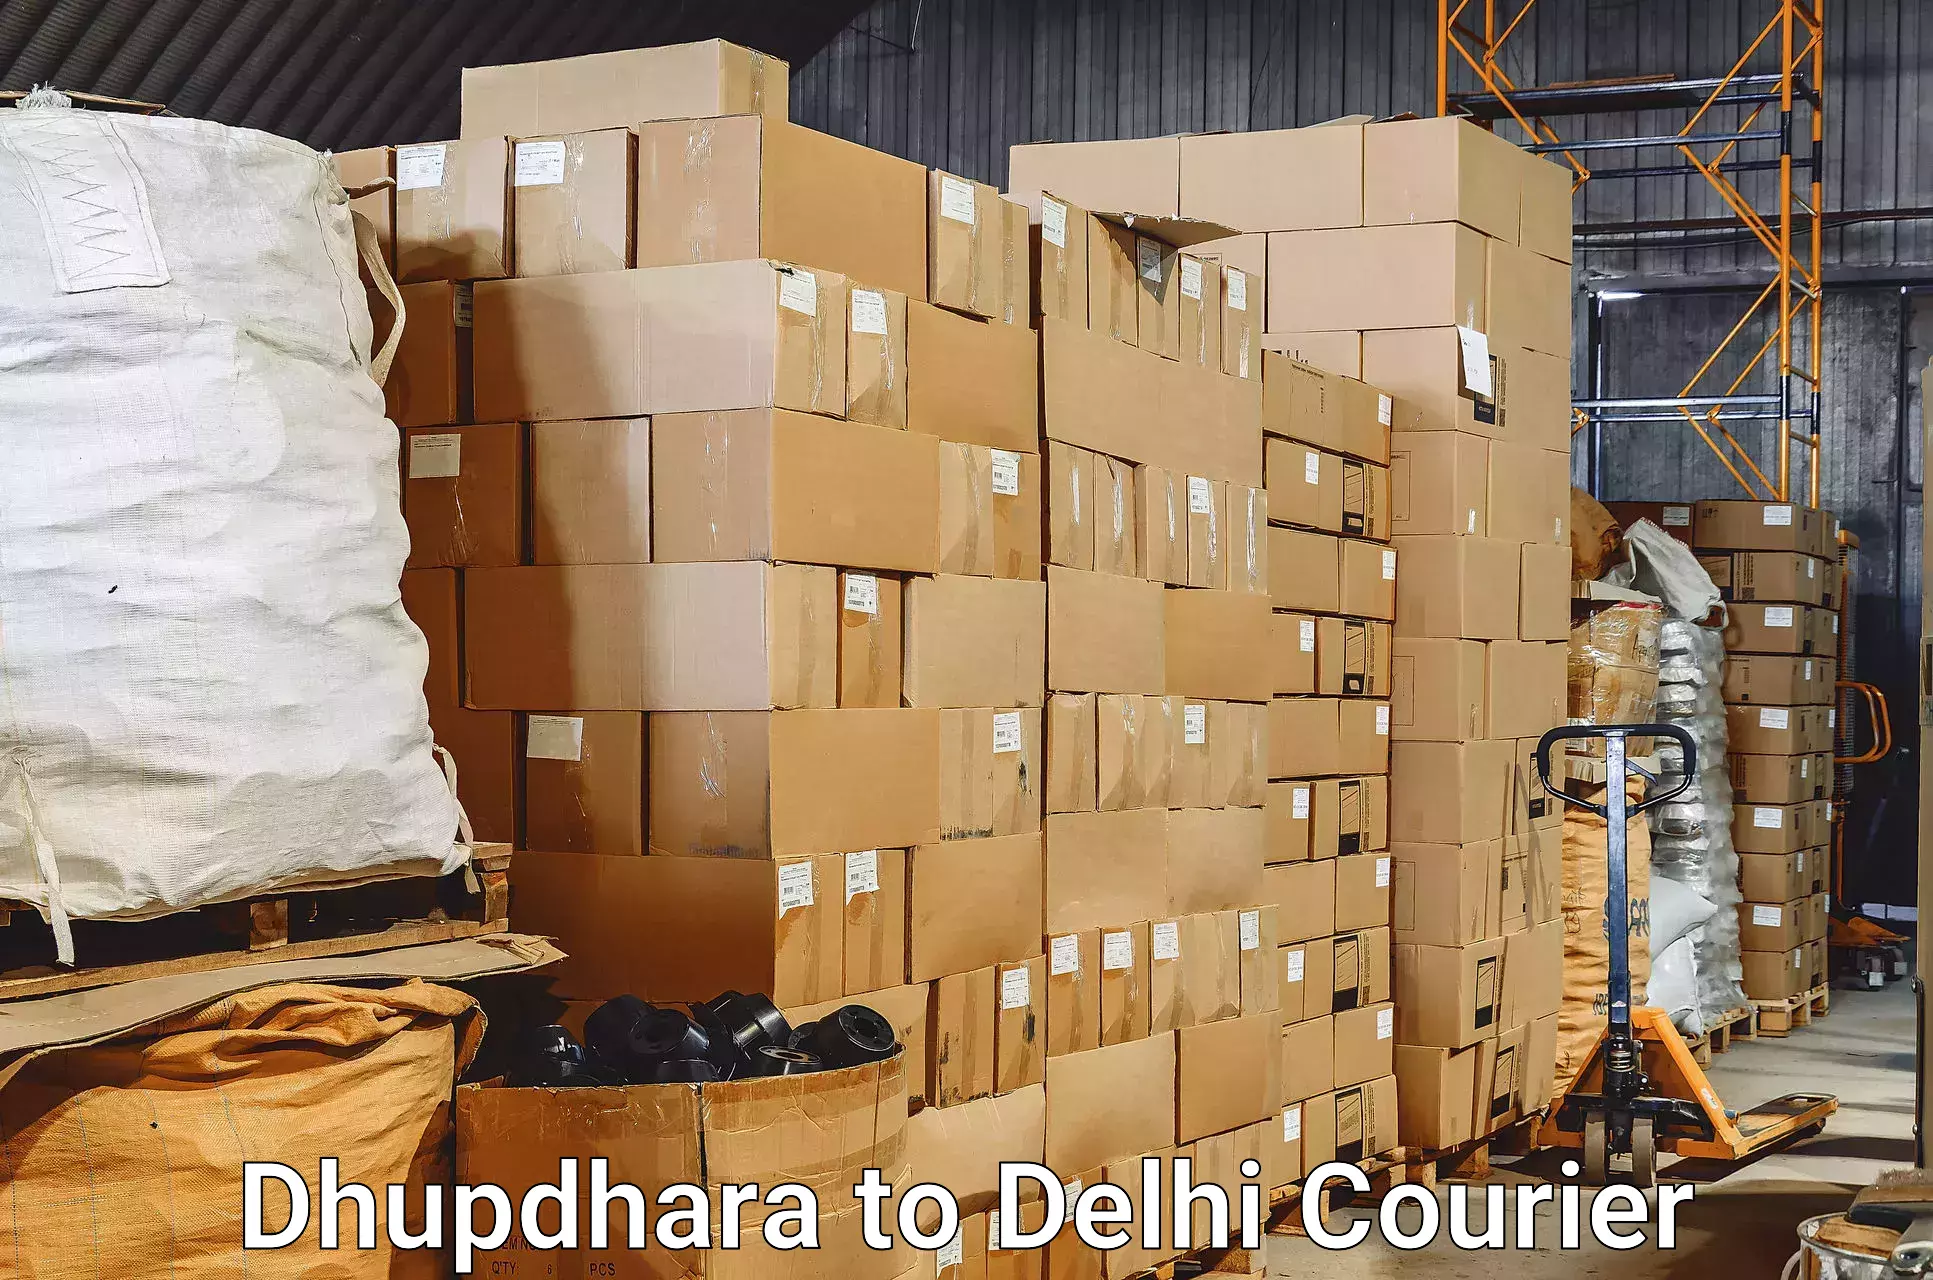 Luggage transport consultancy Dhupdhara to Sarojini Nagar